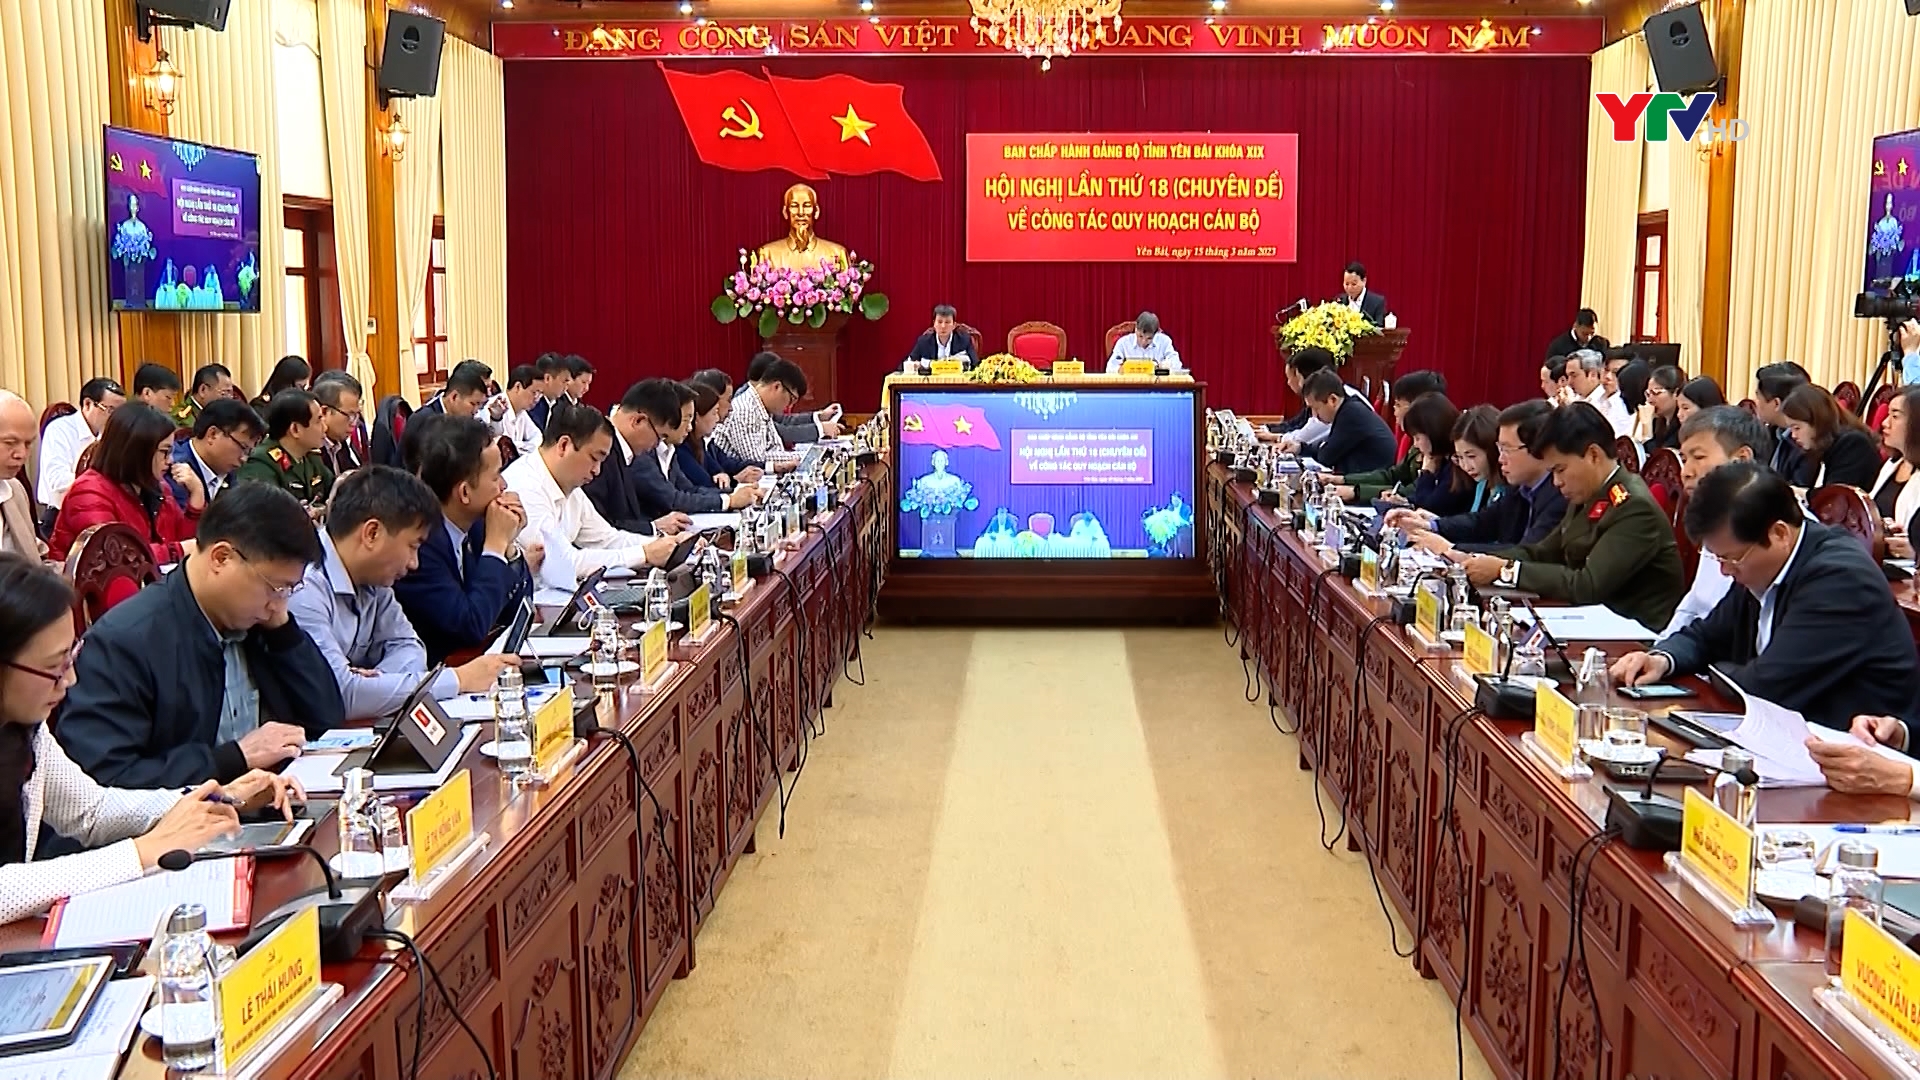 Hội nghị lần thứ 18 Ban Chấp hành Đảng bộ tỉnh Yên Bái về công tác quy hoạch cán bộ